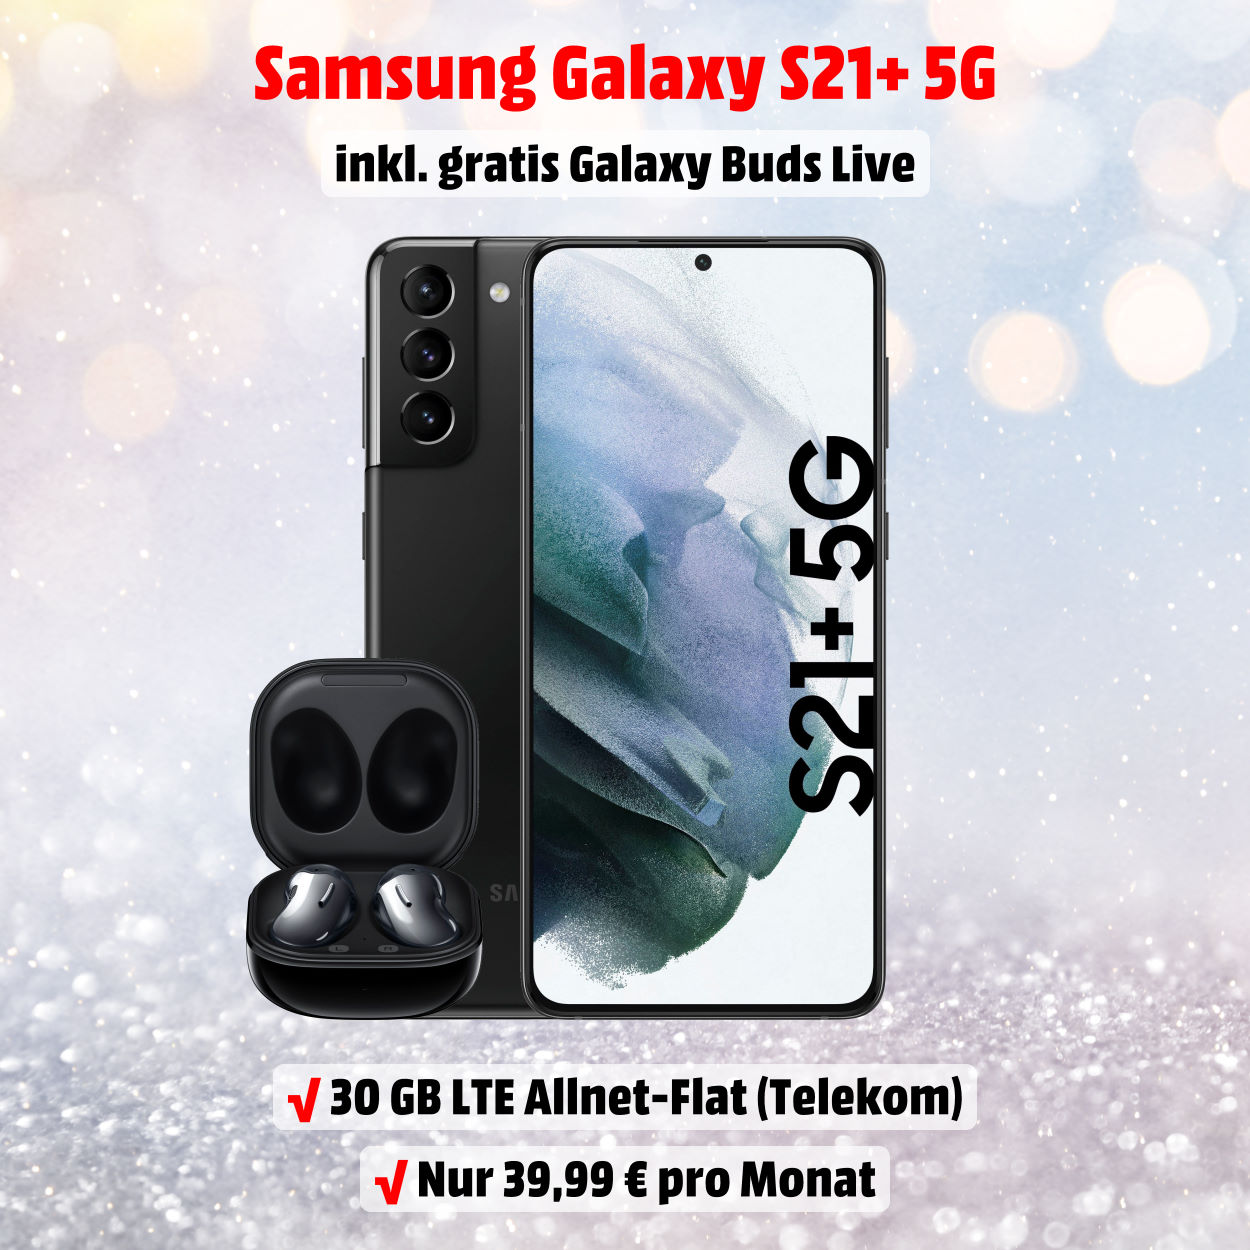 Galaxy S21+ 5G inkl. Galaxy Buds Live und 30 GB LTE Allnet-Flat im besten D-Netz zum absoluten Tiefstpreis